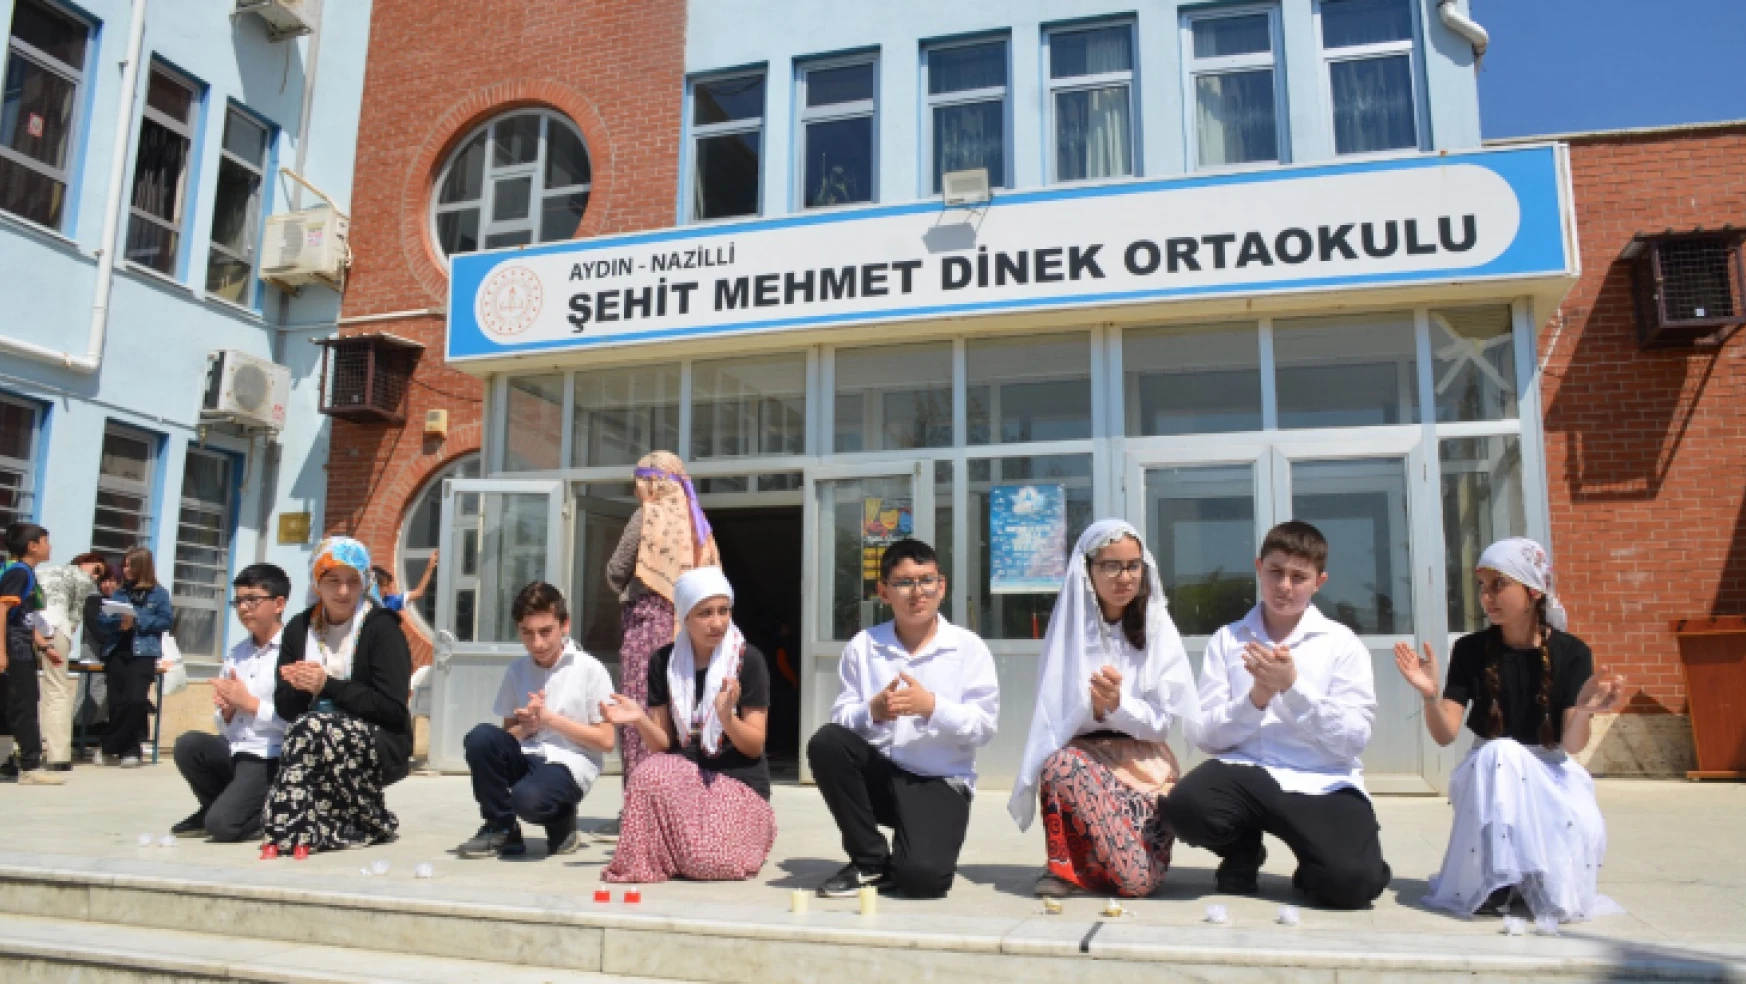 Şehit Mehmet Dinek Ortaokulu'nda 23 Nisan kutlaması